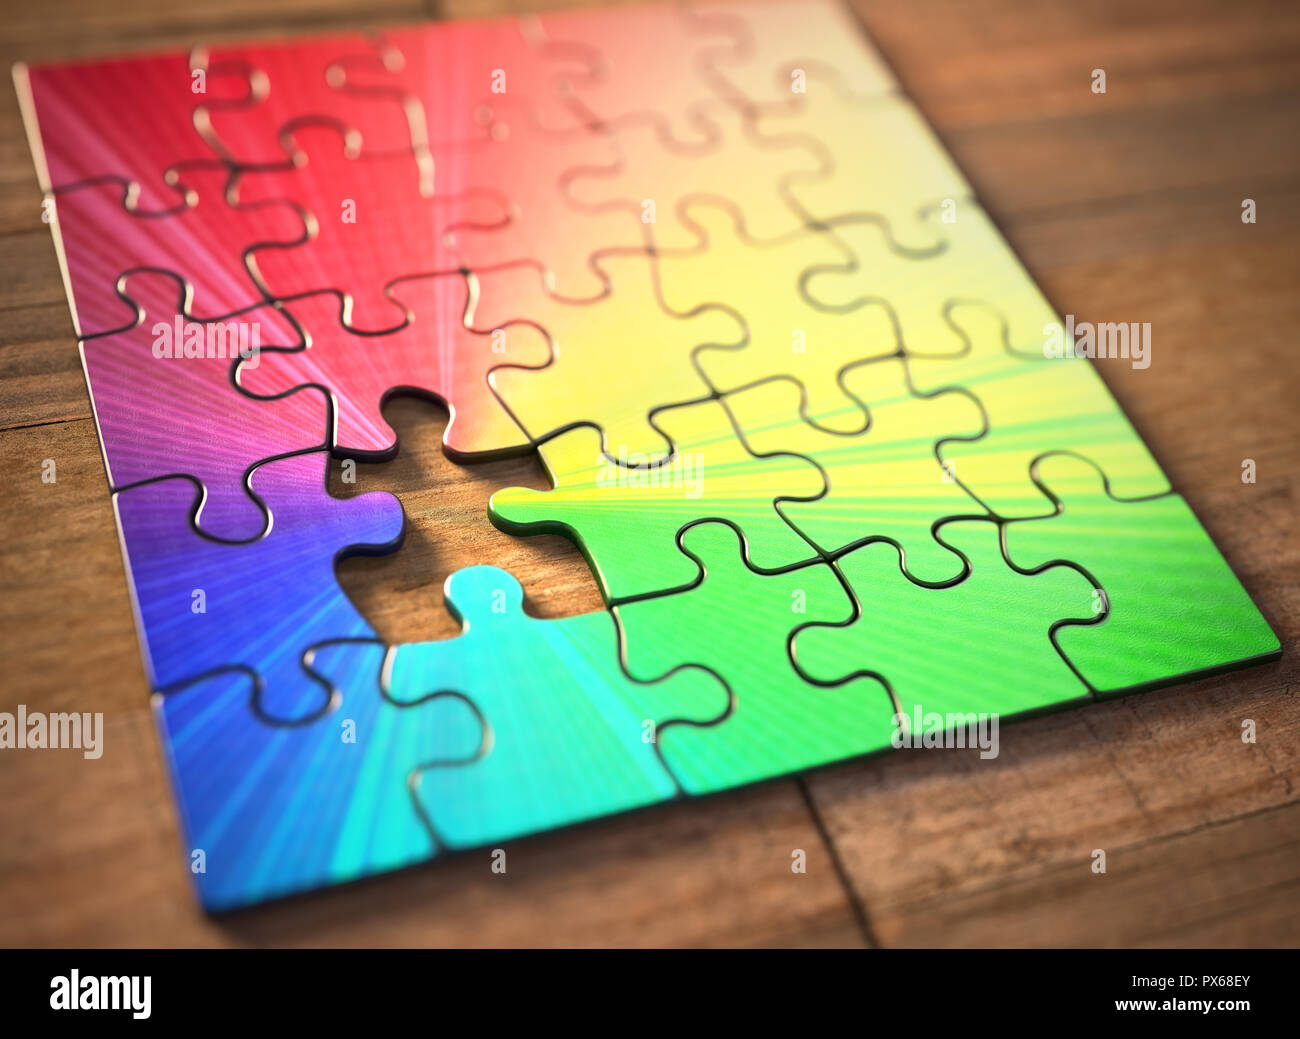 Farbige Puzzle mit einem fehlenden Stück. Mangel an dem Teil, der die Farben gibt. Stockfoto